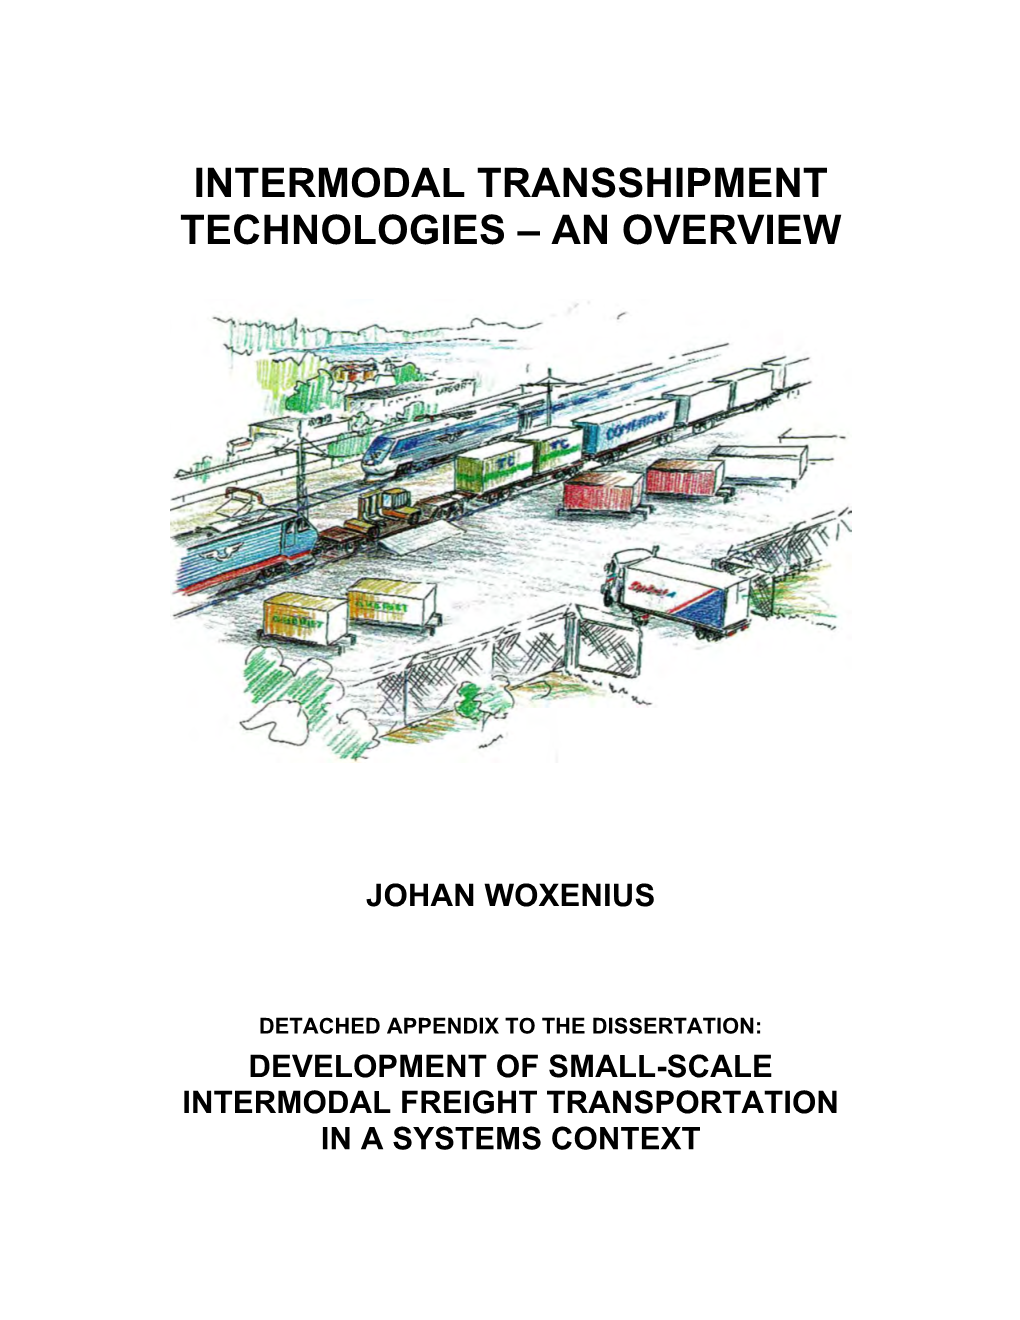 Intermodal Transshipment Technologies – an Overview